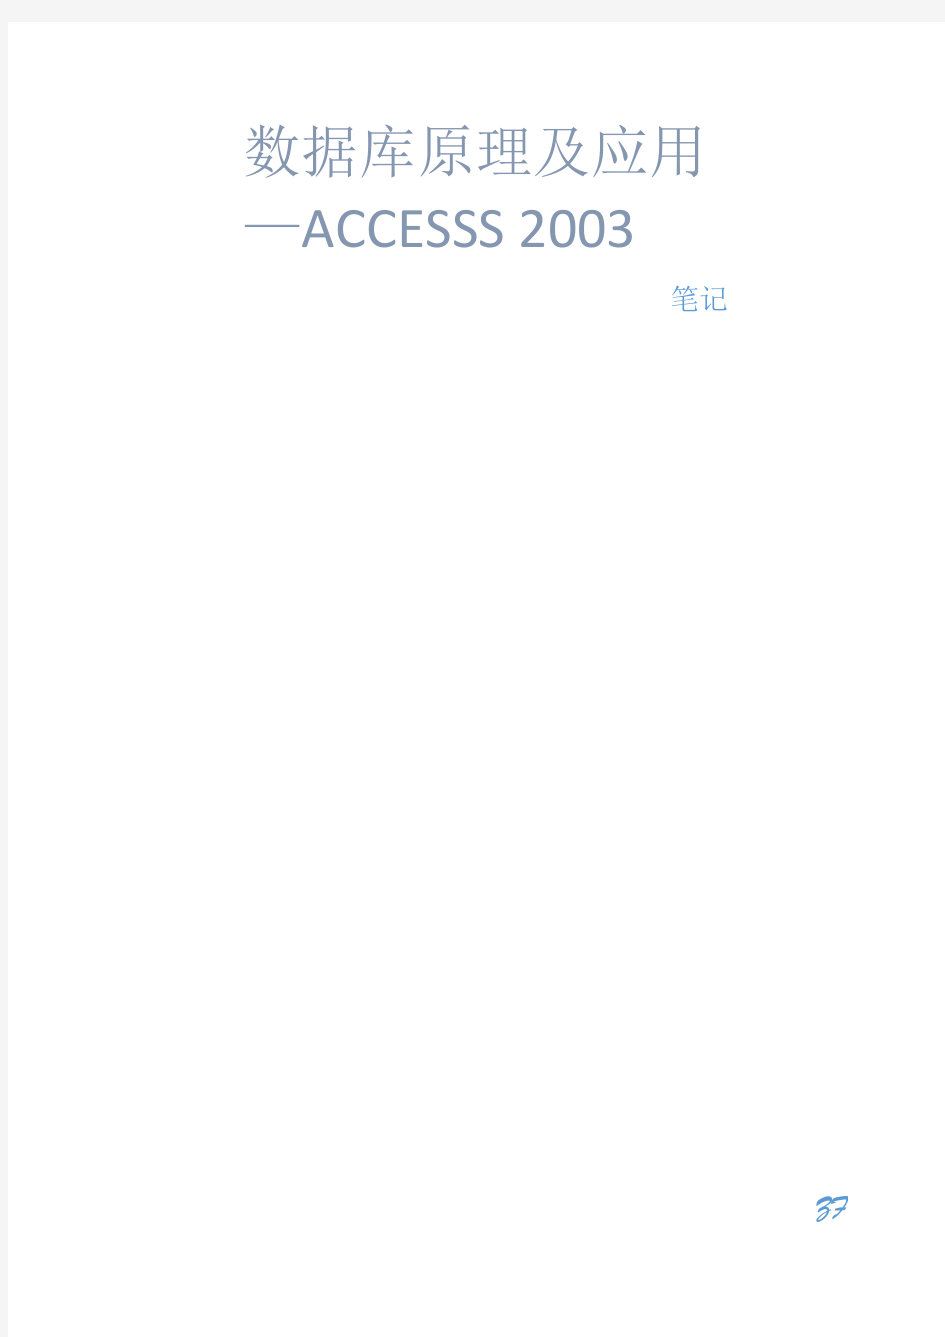 数据库原理及应用-Access 2003笔记内容